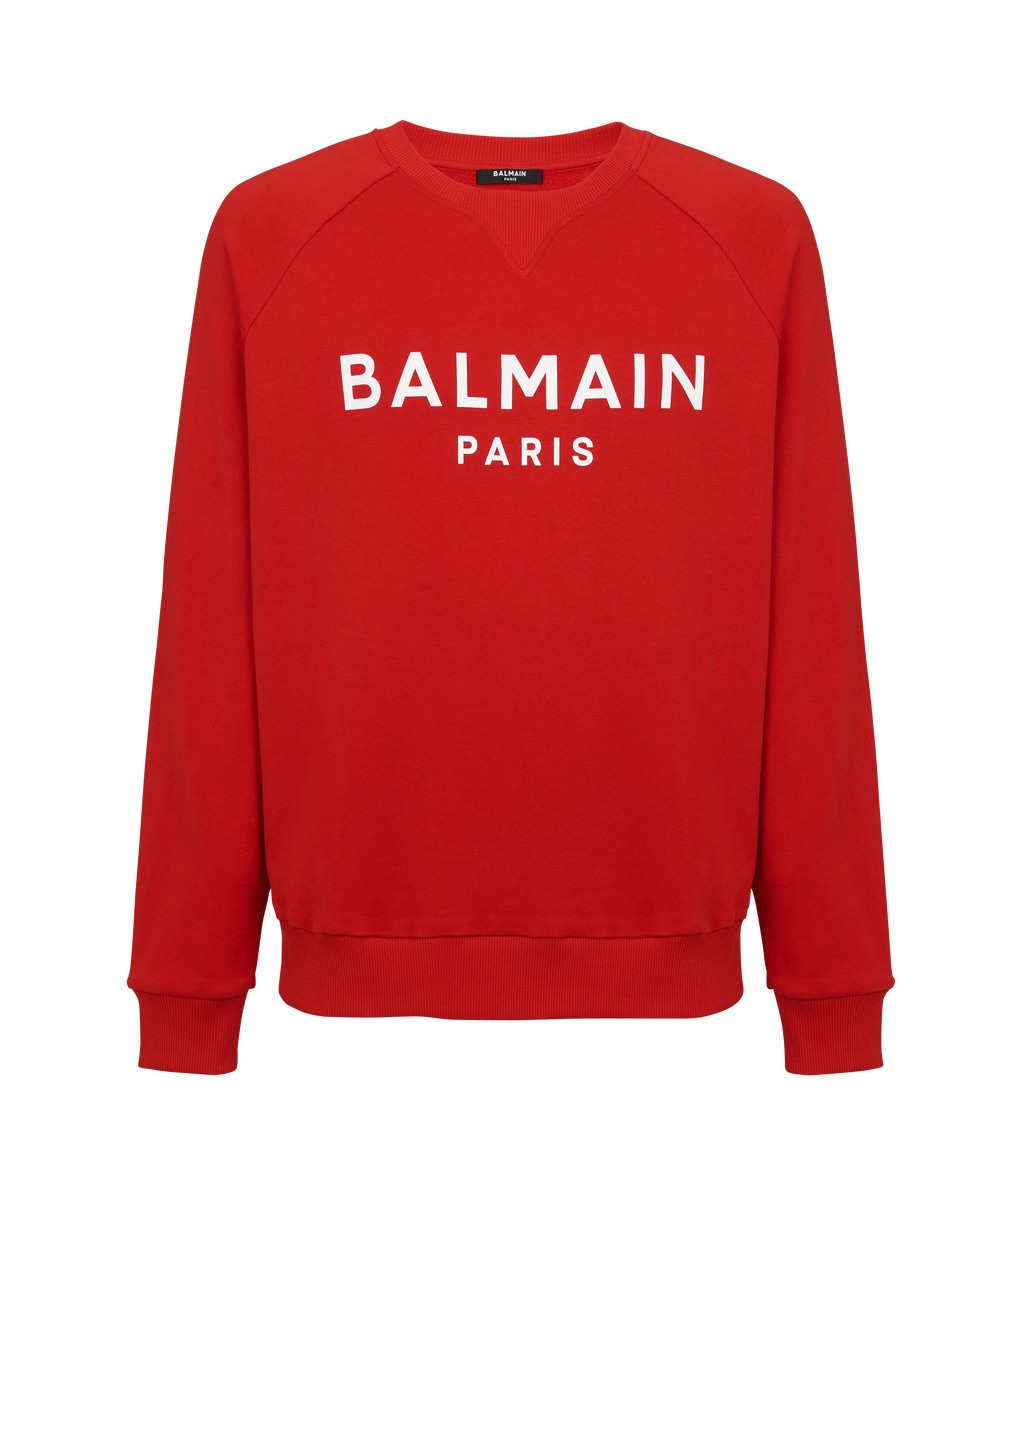 Felpa in cotone con logo Balmain Paris floccato, rosso, hi-res